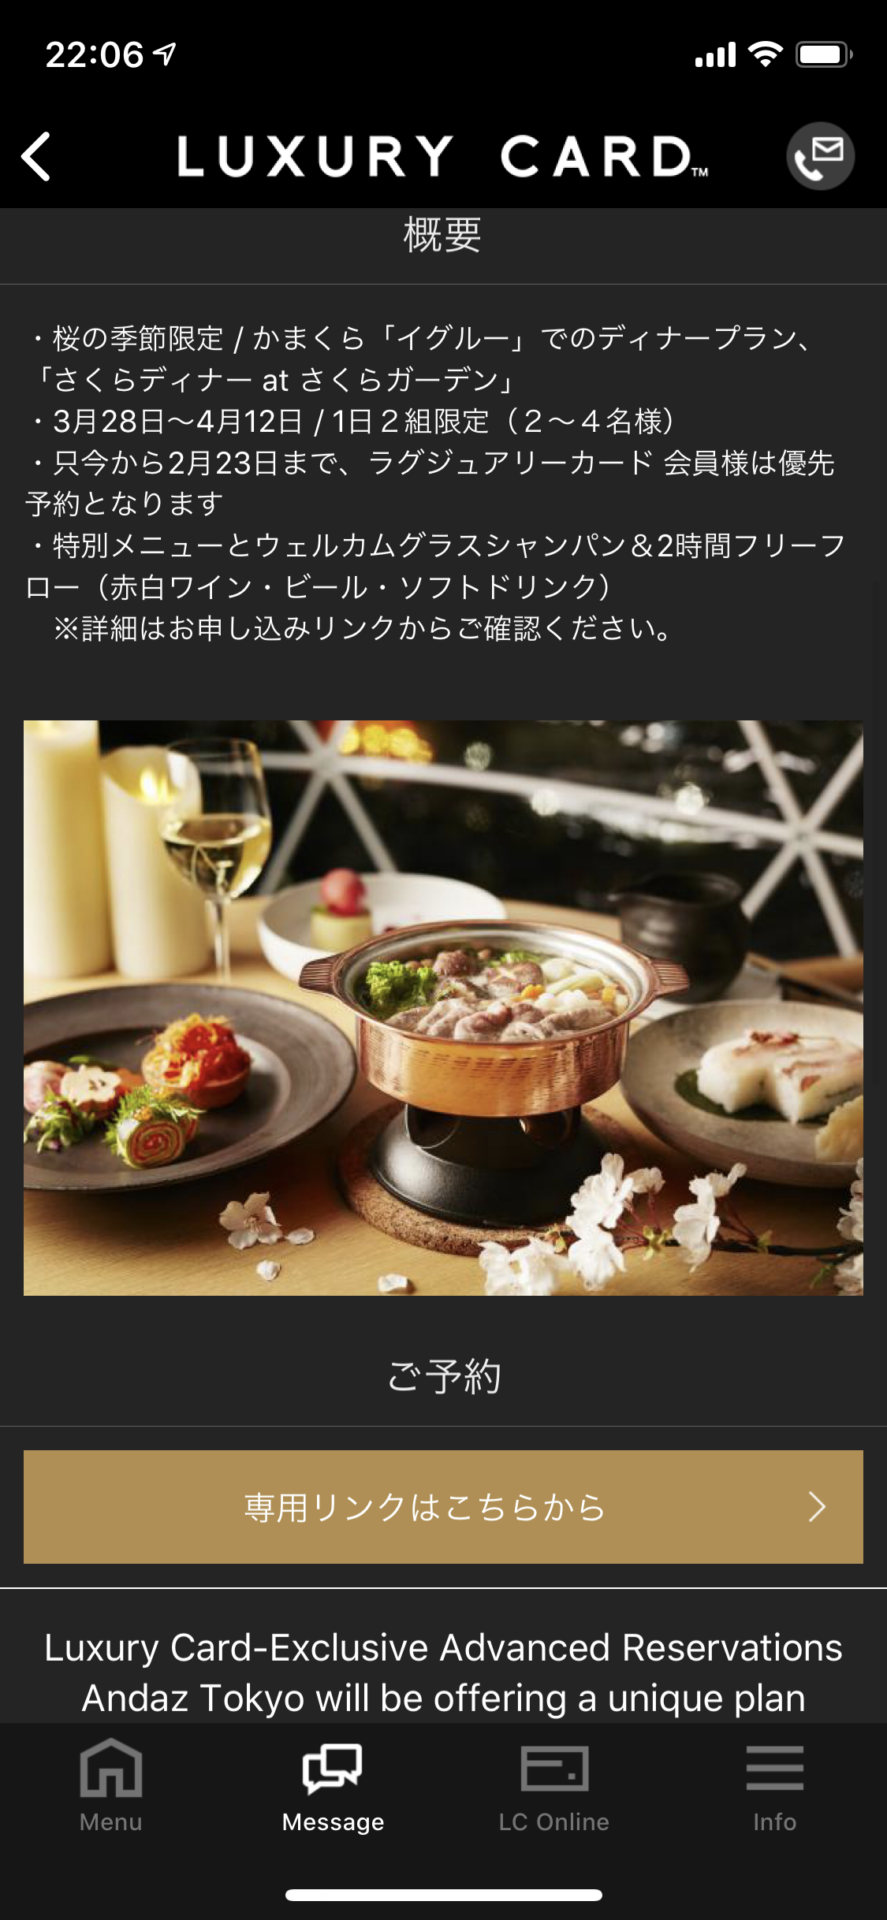 アンダーズ東京の「さくらディナー at さくらガーデン」